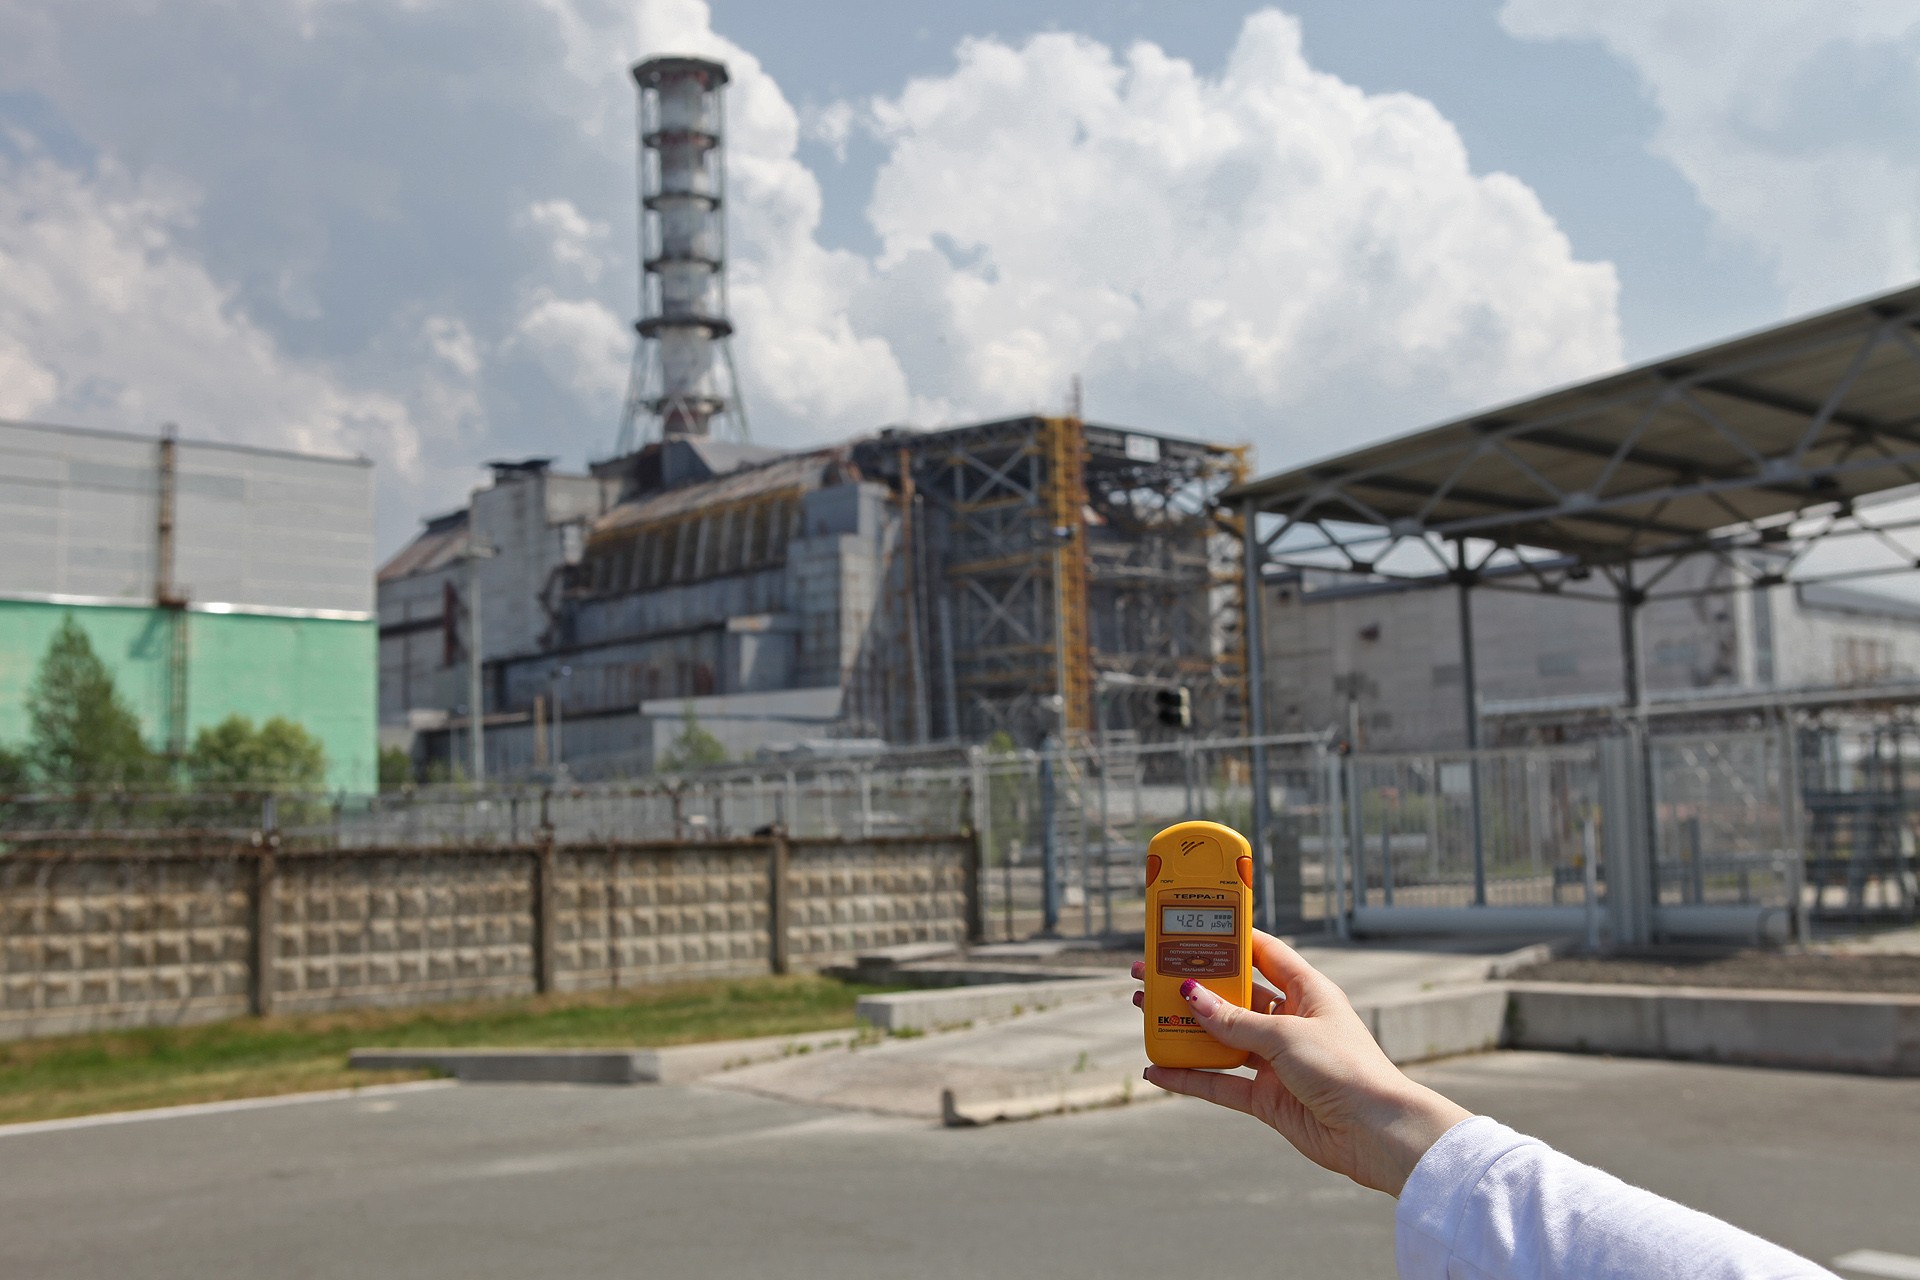 Chernobyl_-_25th_anniversary_5654372657.jpg